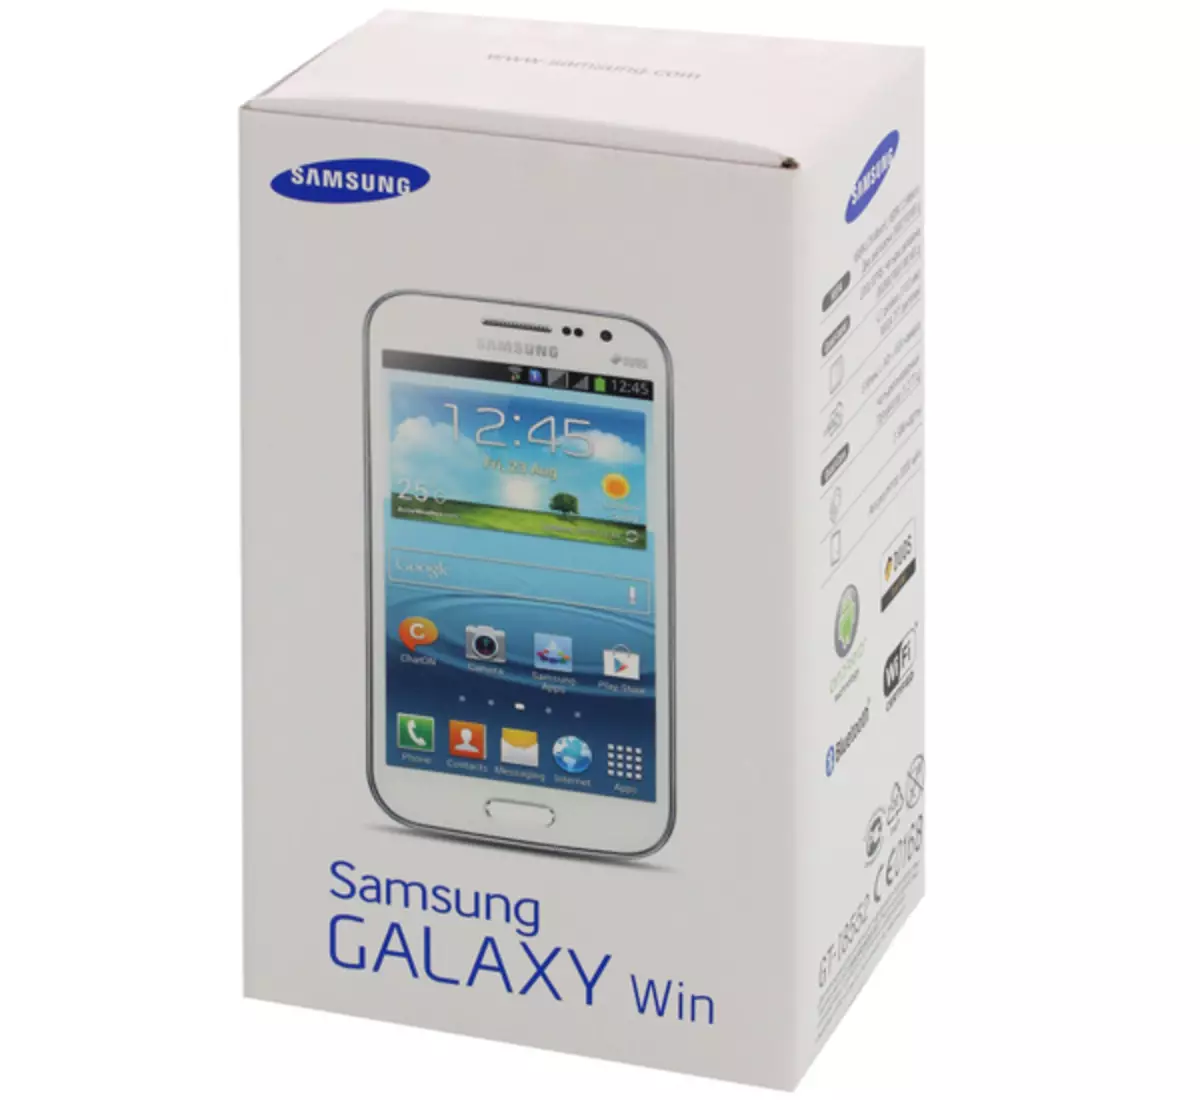 Samsung GT-I8552 Galaxy Win Duos Kies retourneren van smartphone naar fabrieksomstandigheden